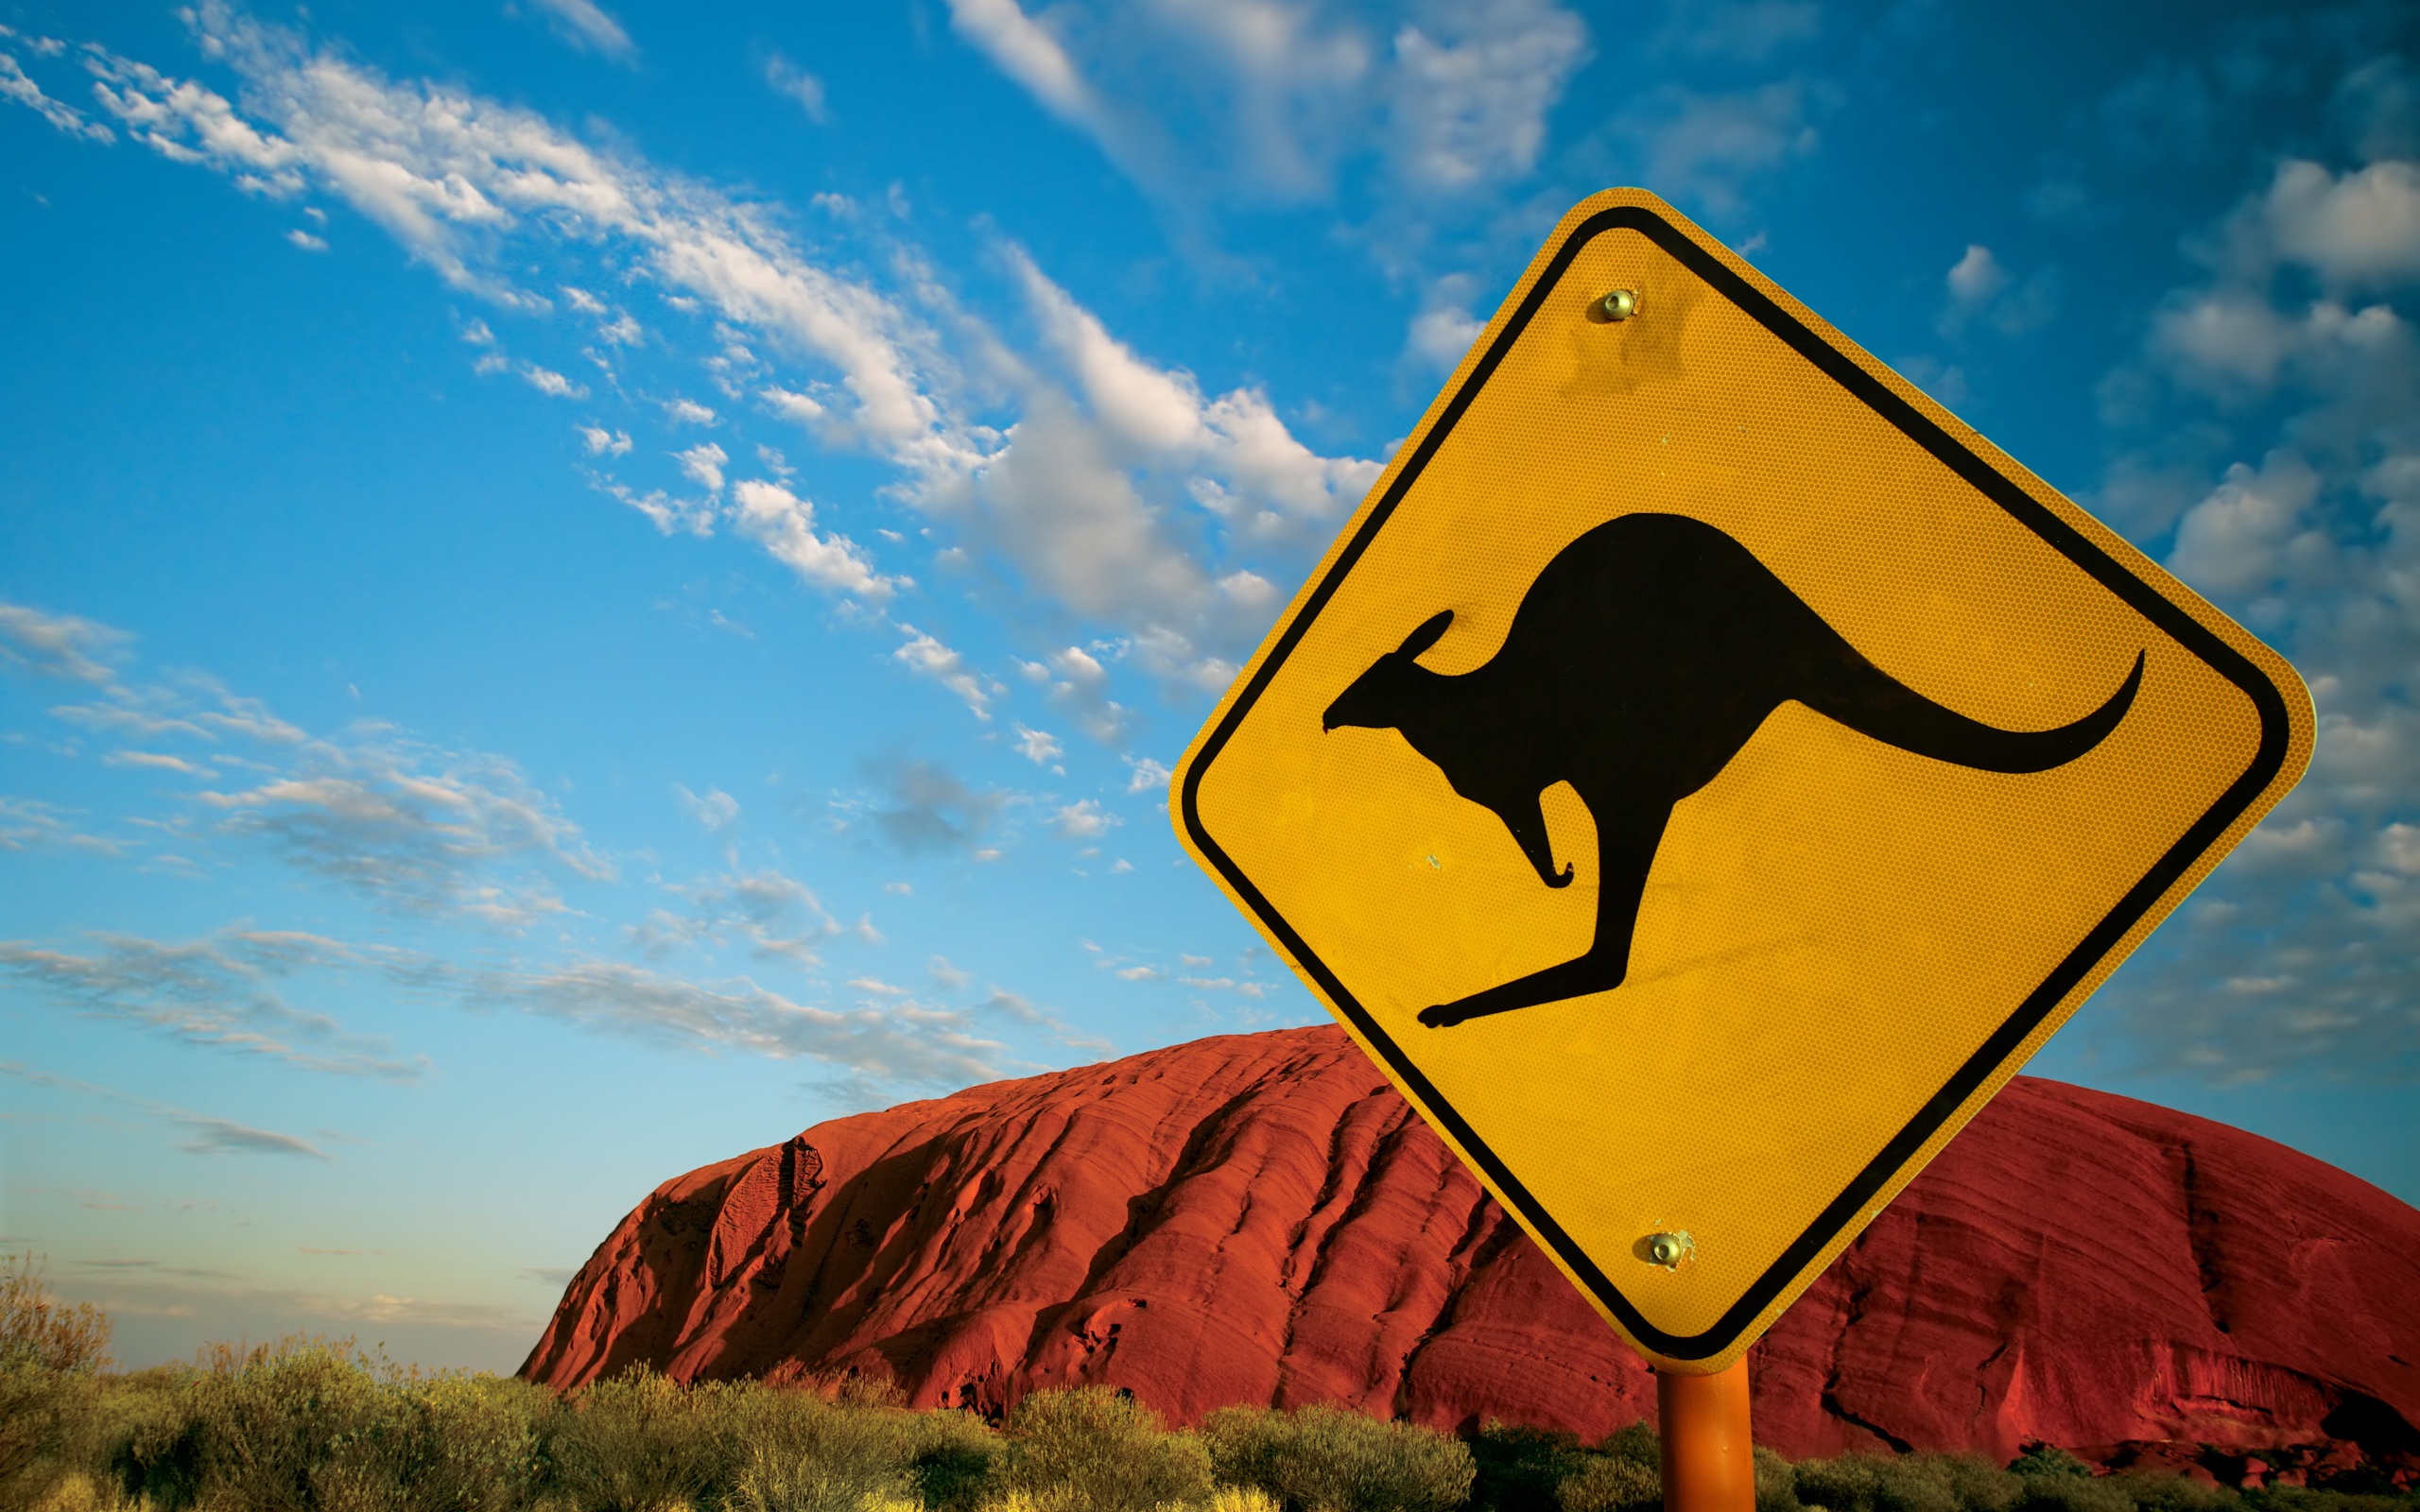 Ayers Rock Kangaroo desktop wallpaper - Misc sign